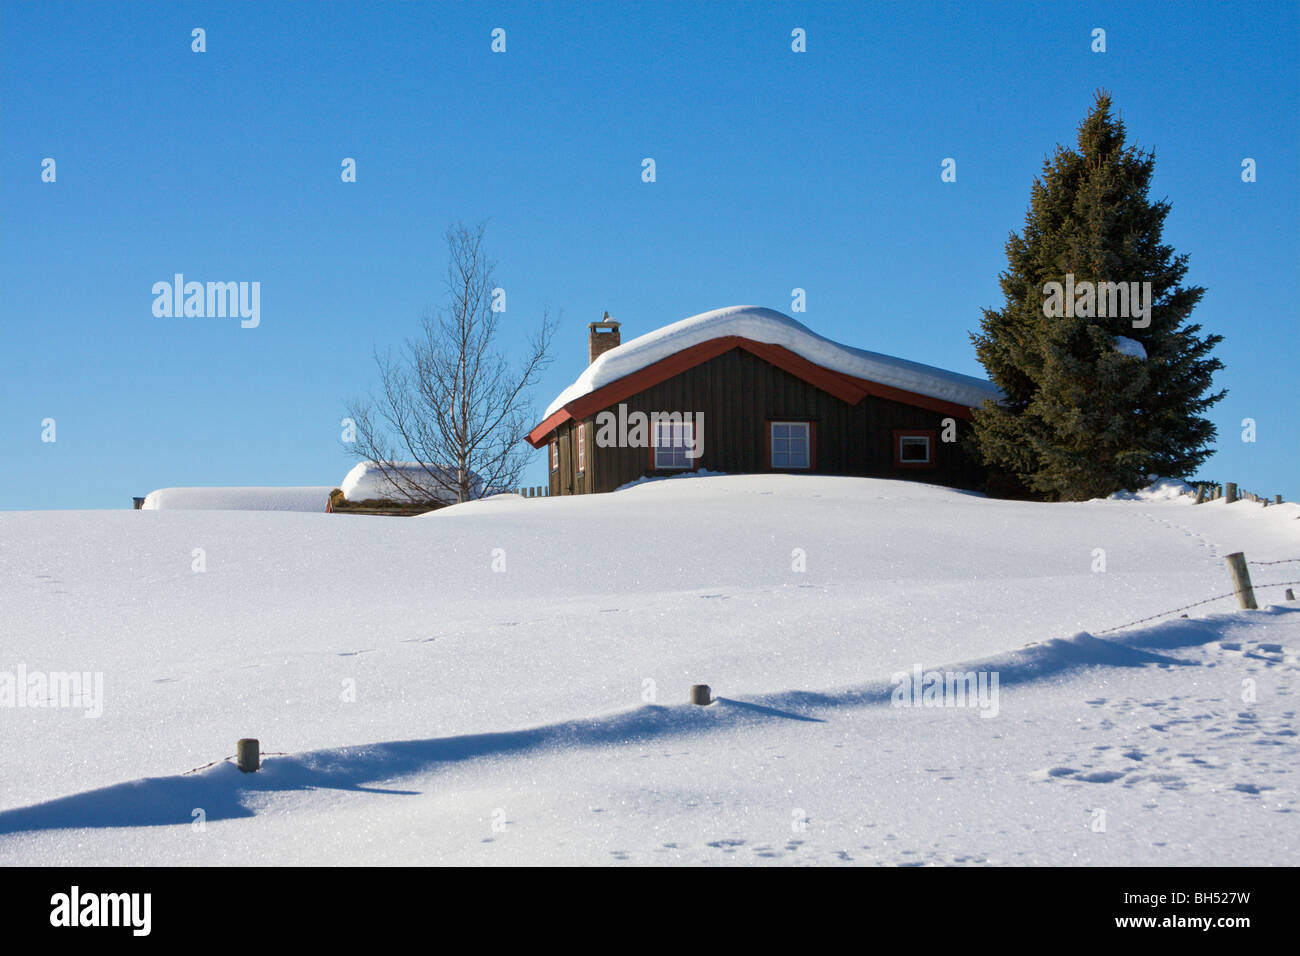 Ferienchalet mit Schnee und Koniferen Baum. Stockfoto